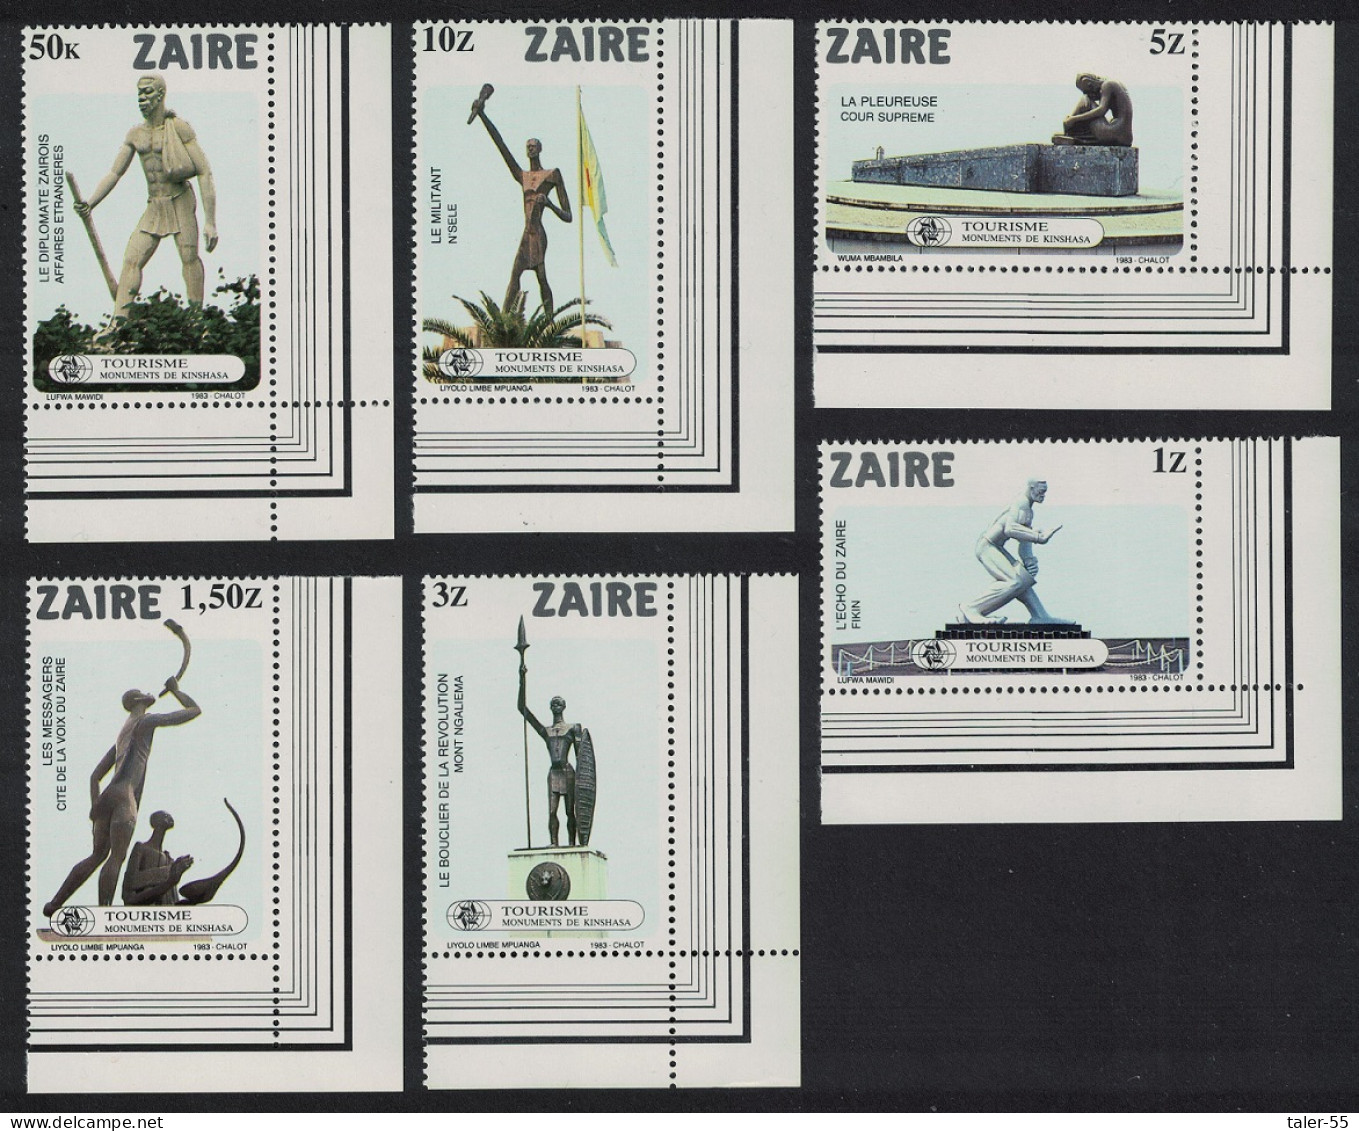 Zaire Kinshasa Monuments 6v Corners 1983 MNH SG#1157-1162 Sc#1115-1120 - Nuovi